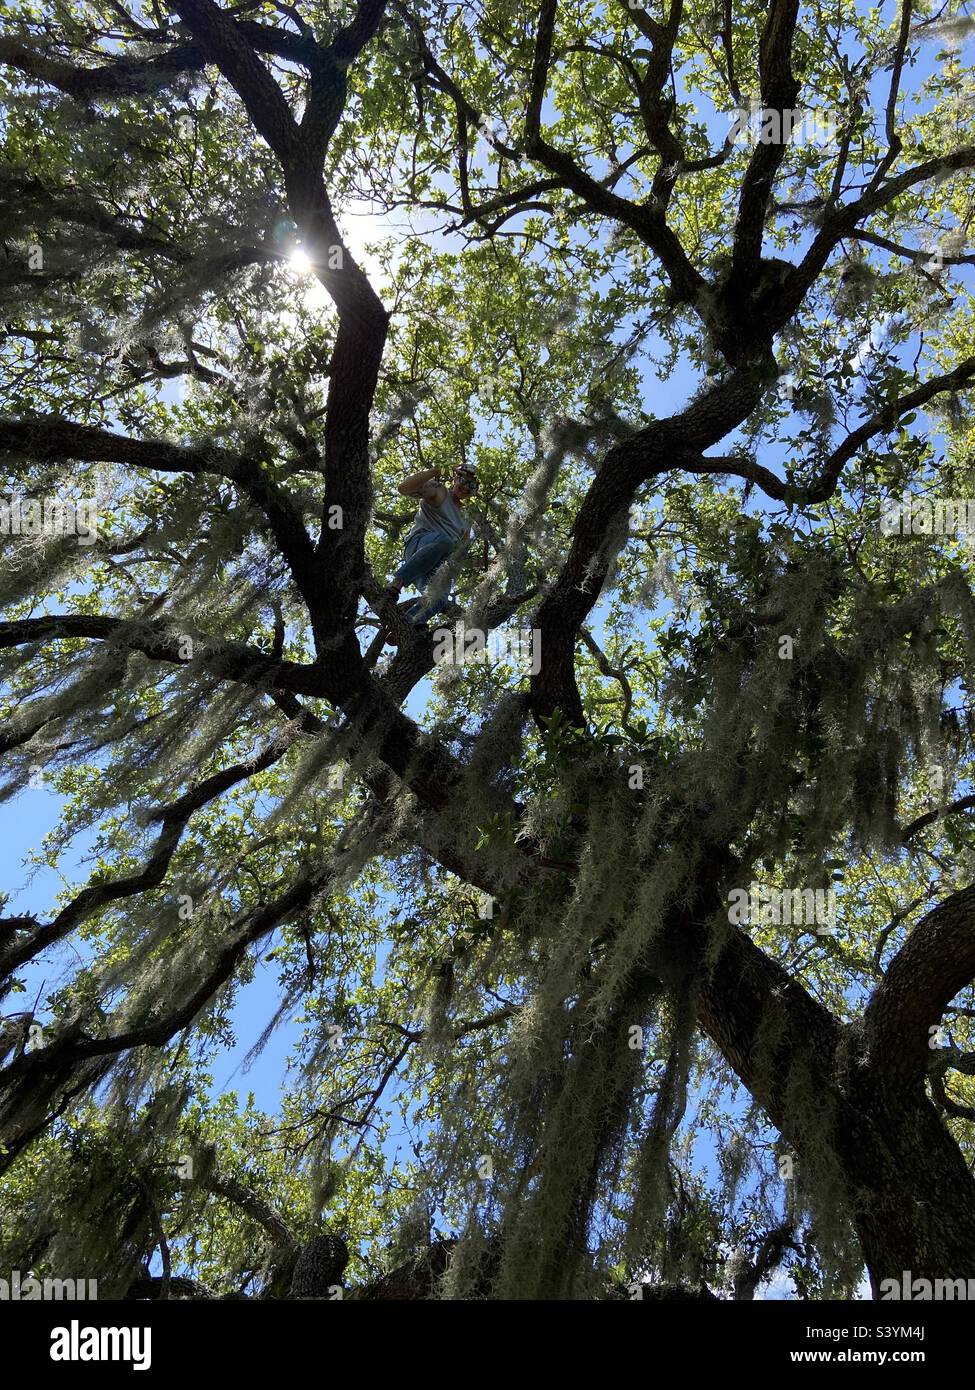 Spanish moss tree climb Stock Photo